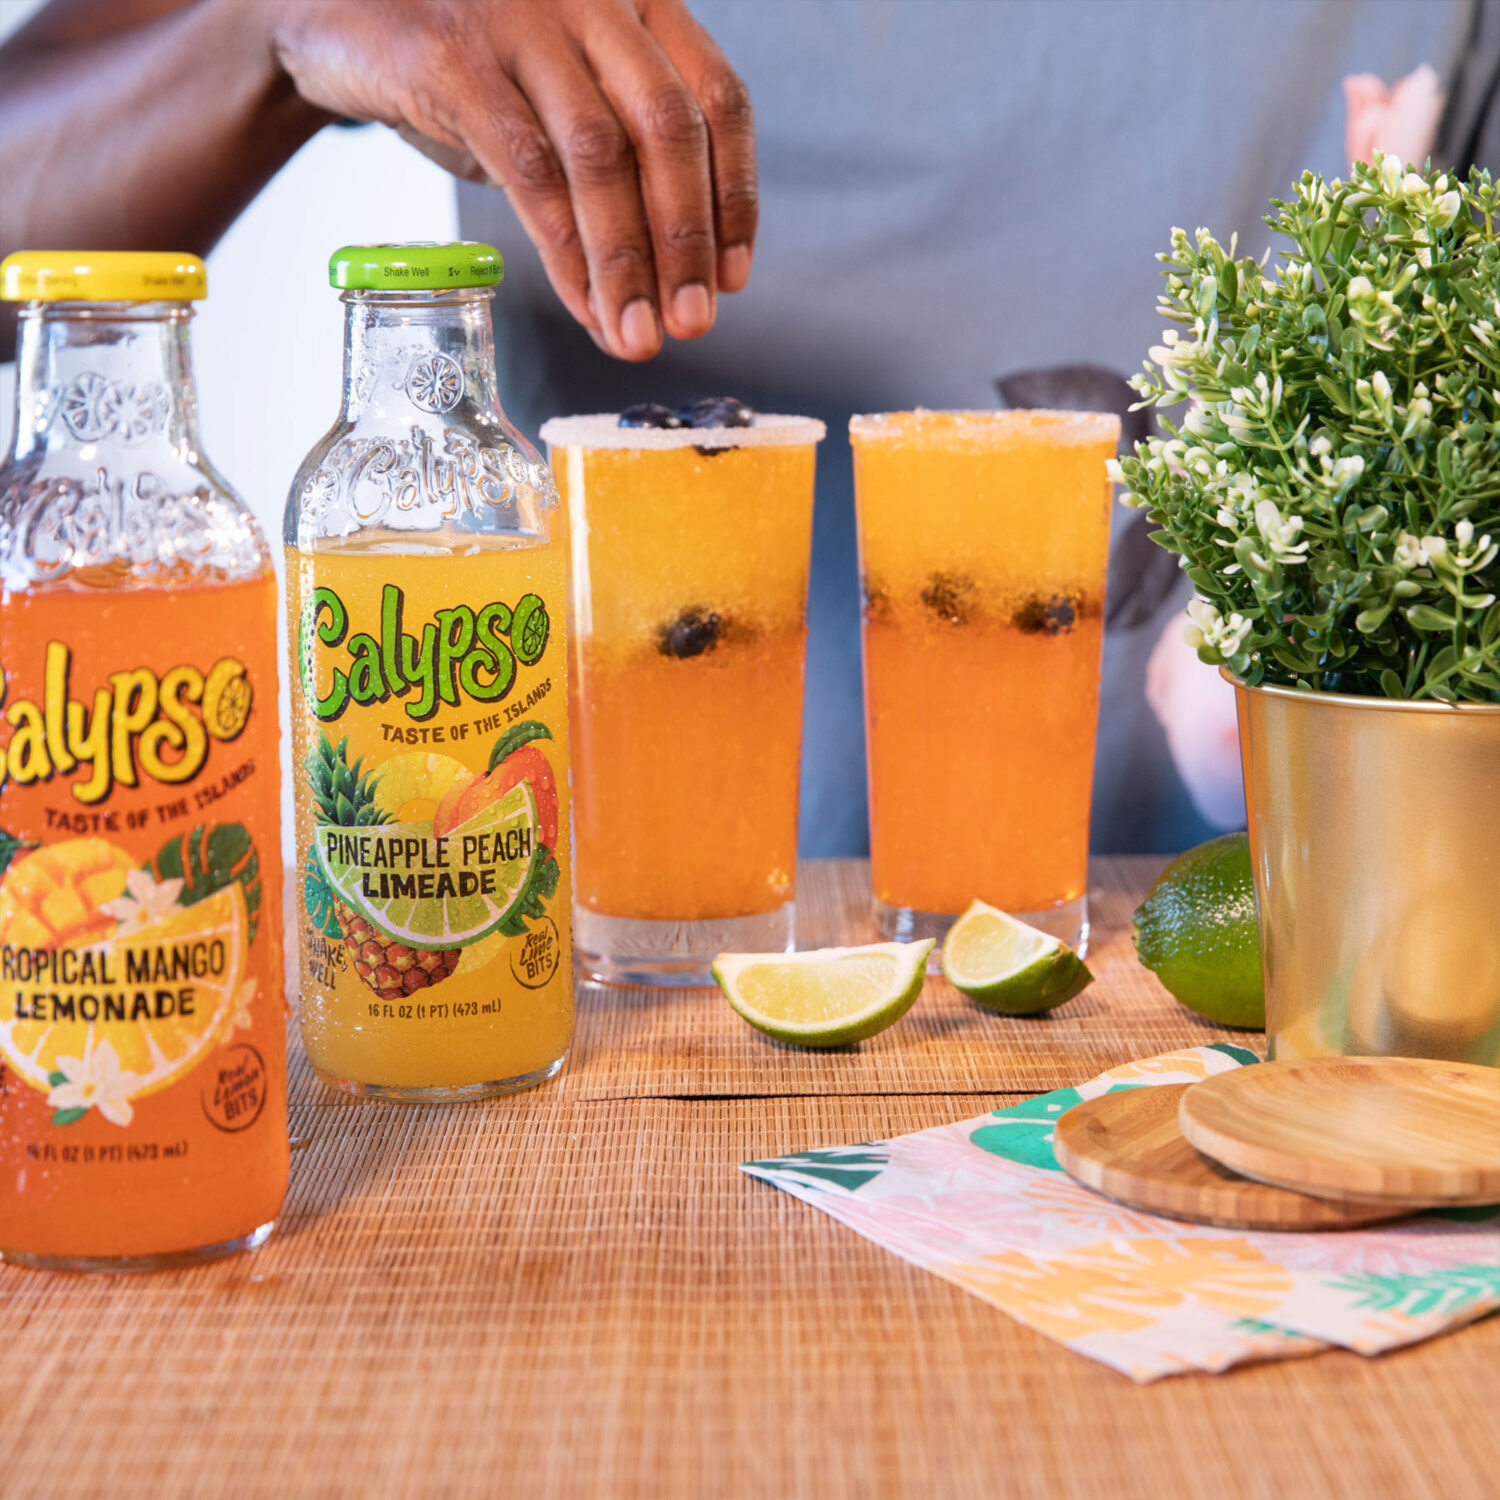 A cocktail using Calypso Pineapple Peach Limeade and Tropical Mango Lemonade.